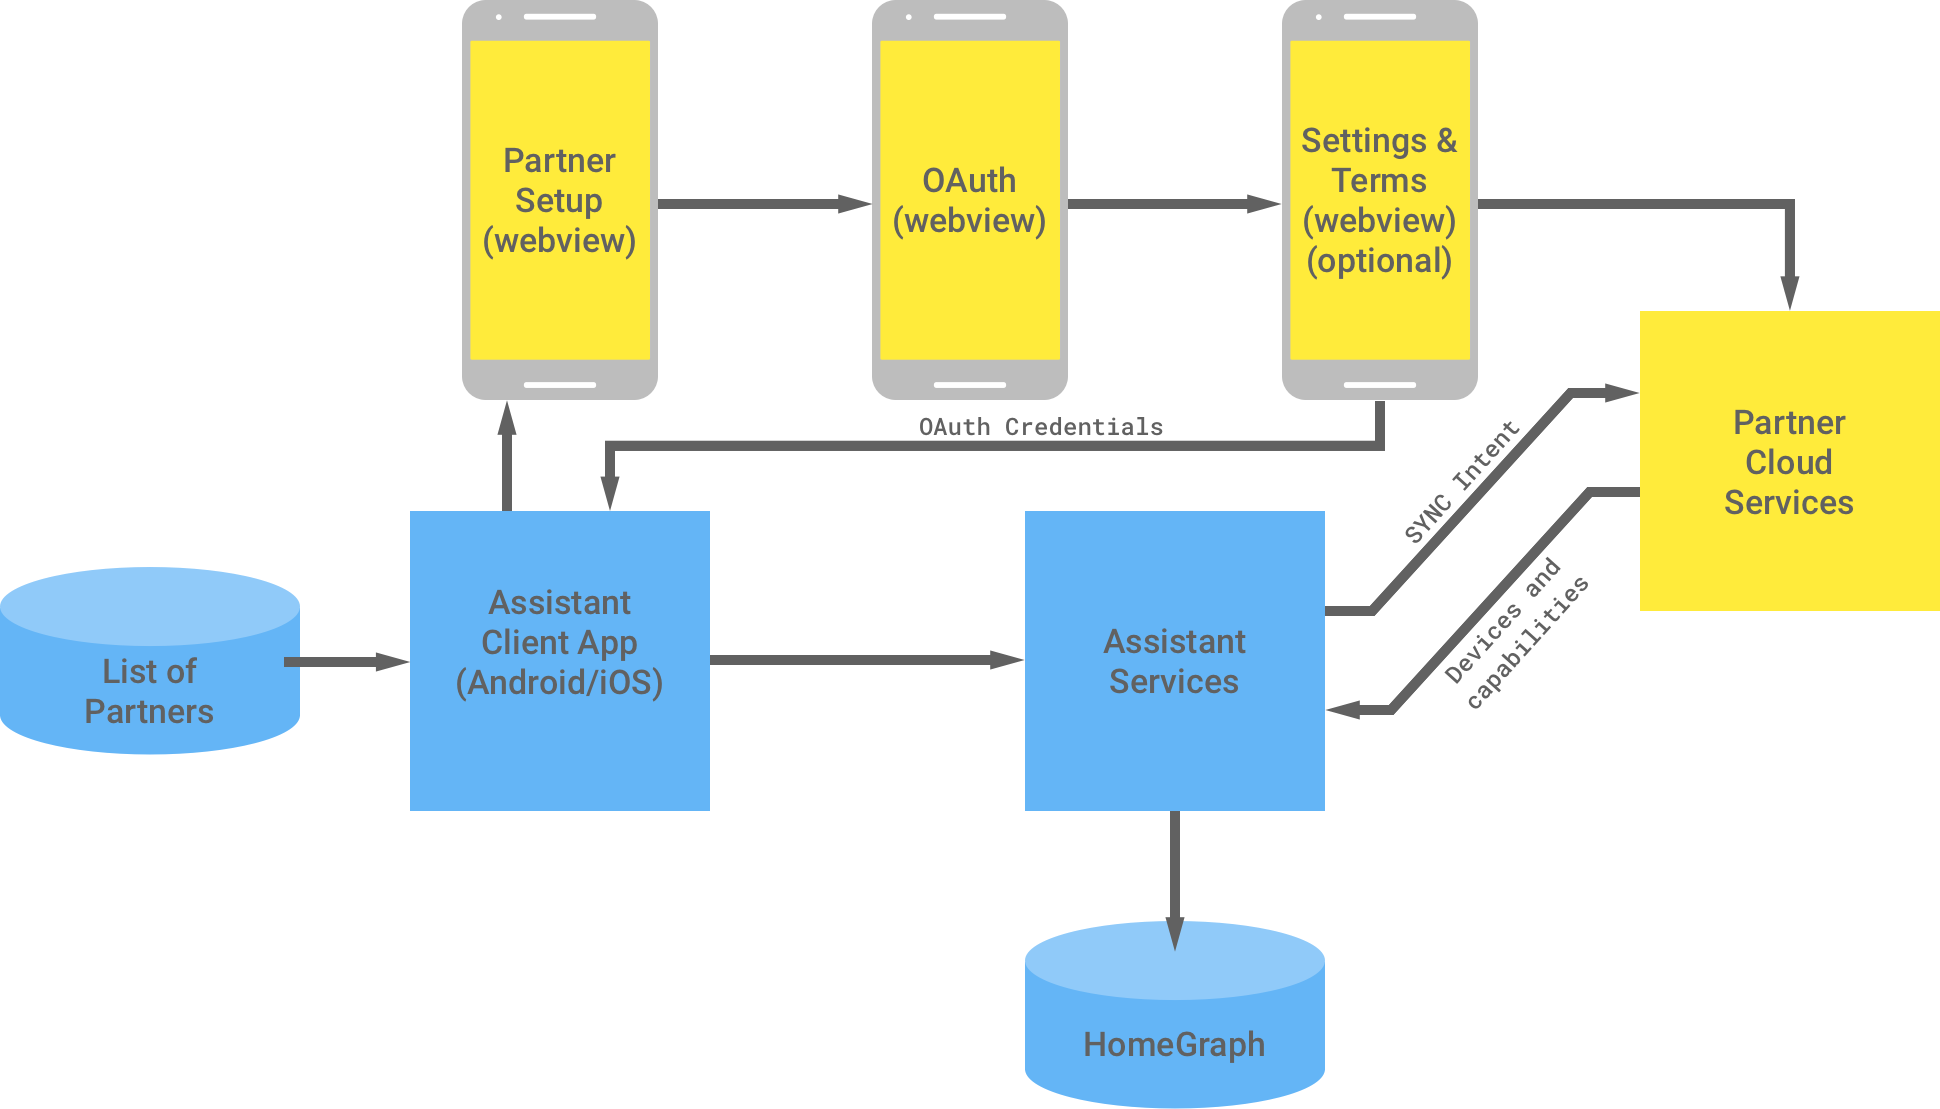 下圖顯示 Google 基礎架構與合作夥伴基礎架構之間的互動。在 Google 基礎架構中，Google 助理用戶端應用程式各有可用的合作夥伴清單，然後交由合作夥伴基礎架構完成 OAuth 驗證。合作夥伴端的 OAuth 驗證包括合作夥伴設定 WebView、OAuth 網頁畫面、選用設定和條款，以及合作夥伴雲端服務。接著，合作夥伴基礎架構會將 OAuth 憑證傳回至 Google 助理用戶端應用程式。合作夥伴雲端服務會將可用裝置和功能傳送至 Google 助理服務，然後將資訊儲存至 Home Graph 中。